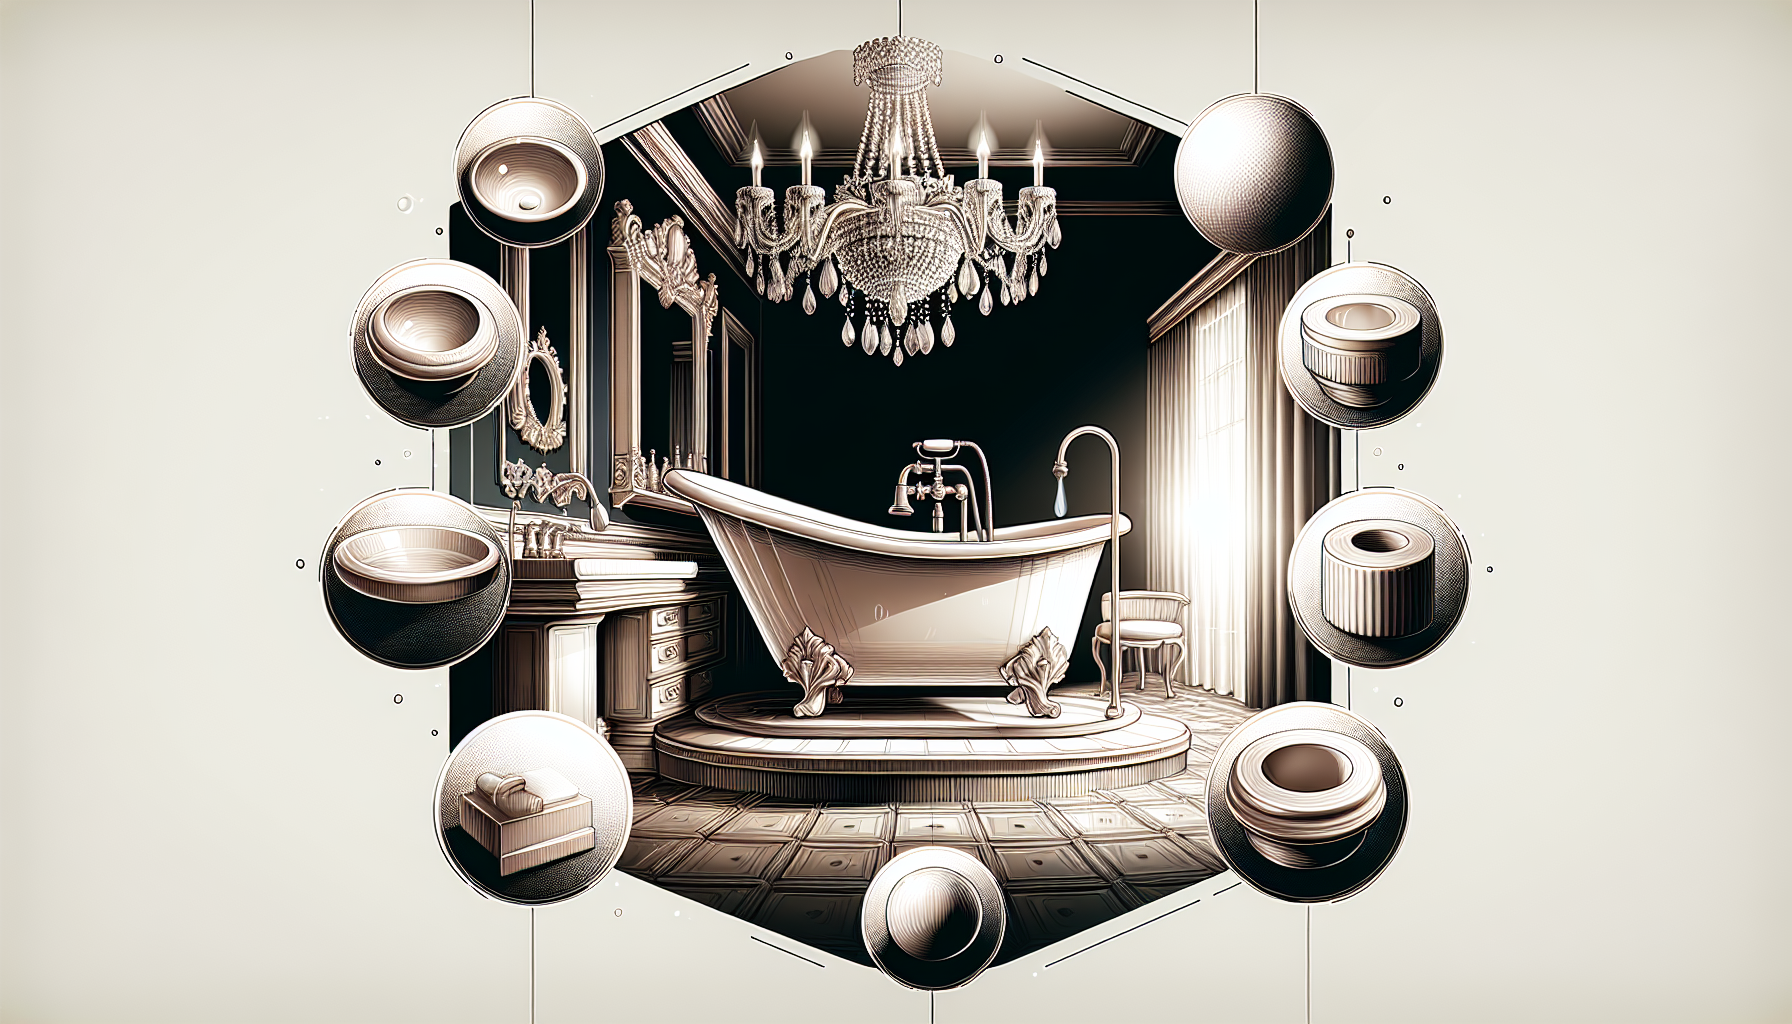 Keramik und Porzellan als klassische Materialien in Badeinrichtungen